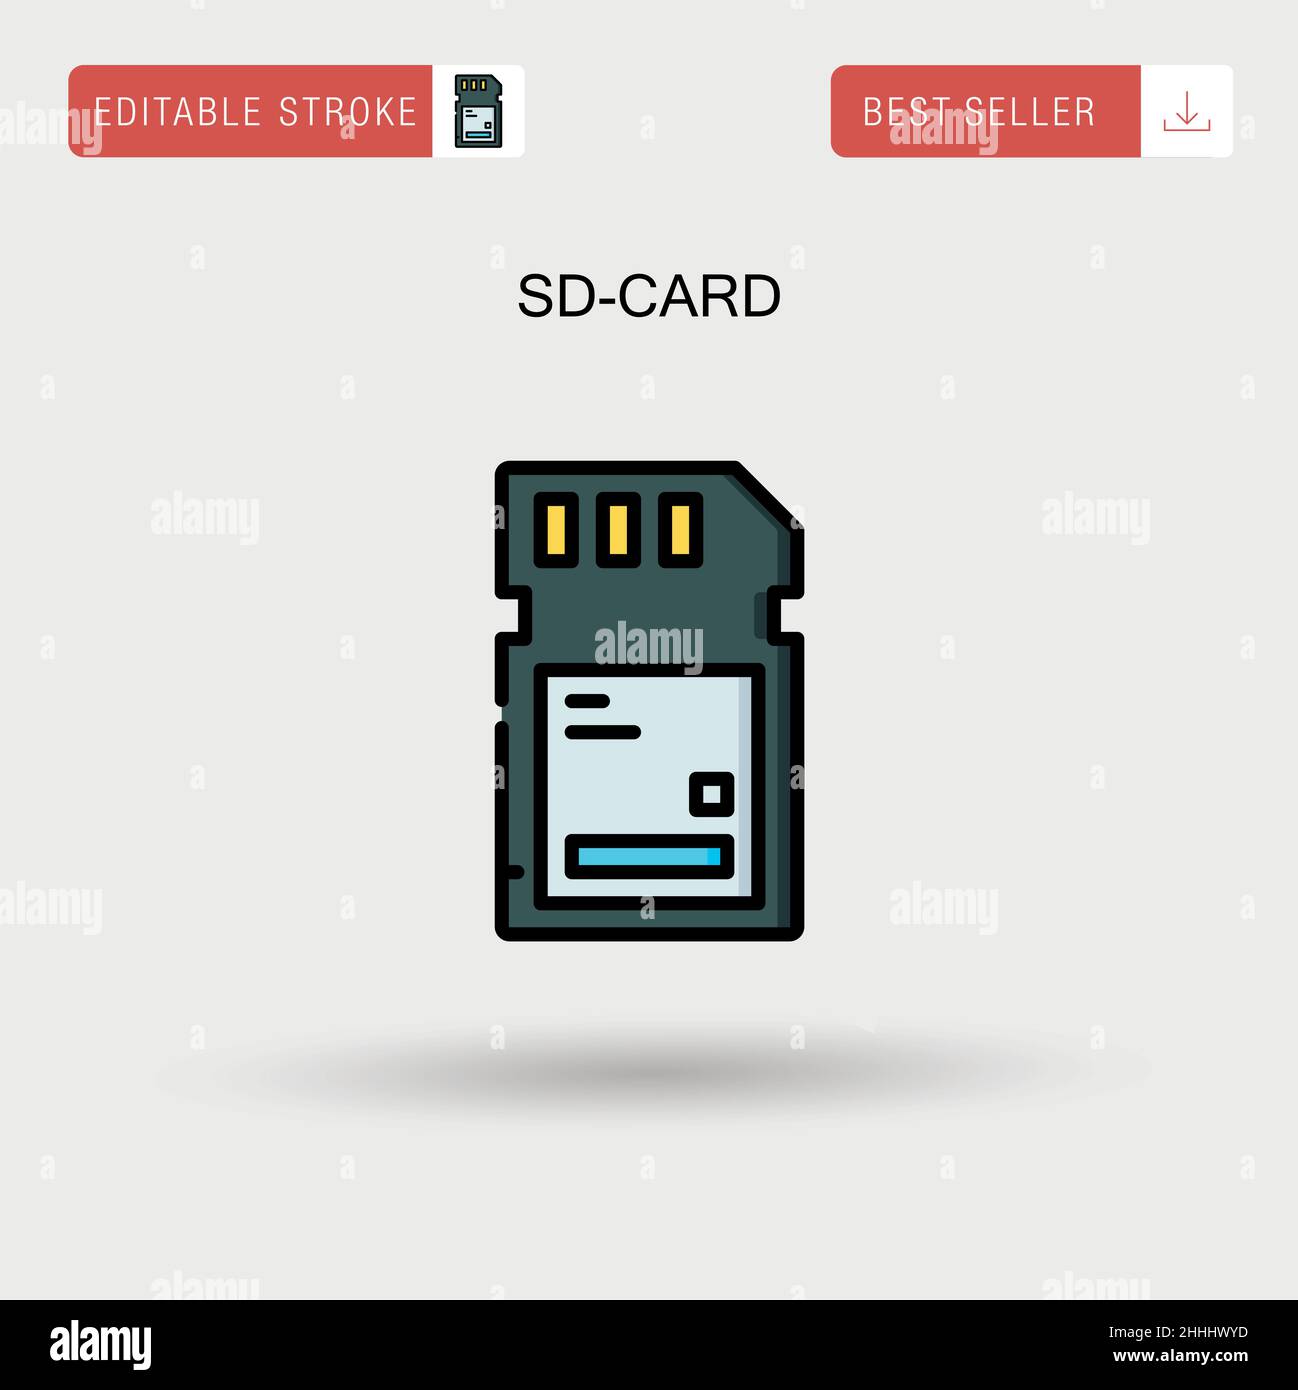 Sd-card Simple vector icon. Stock Vector